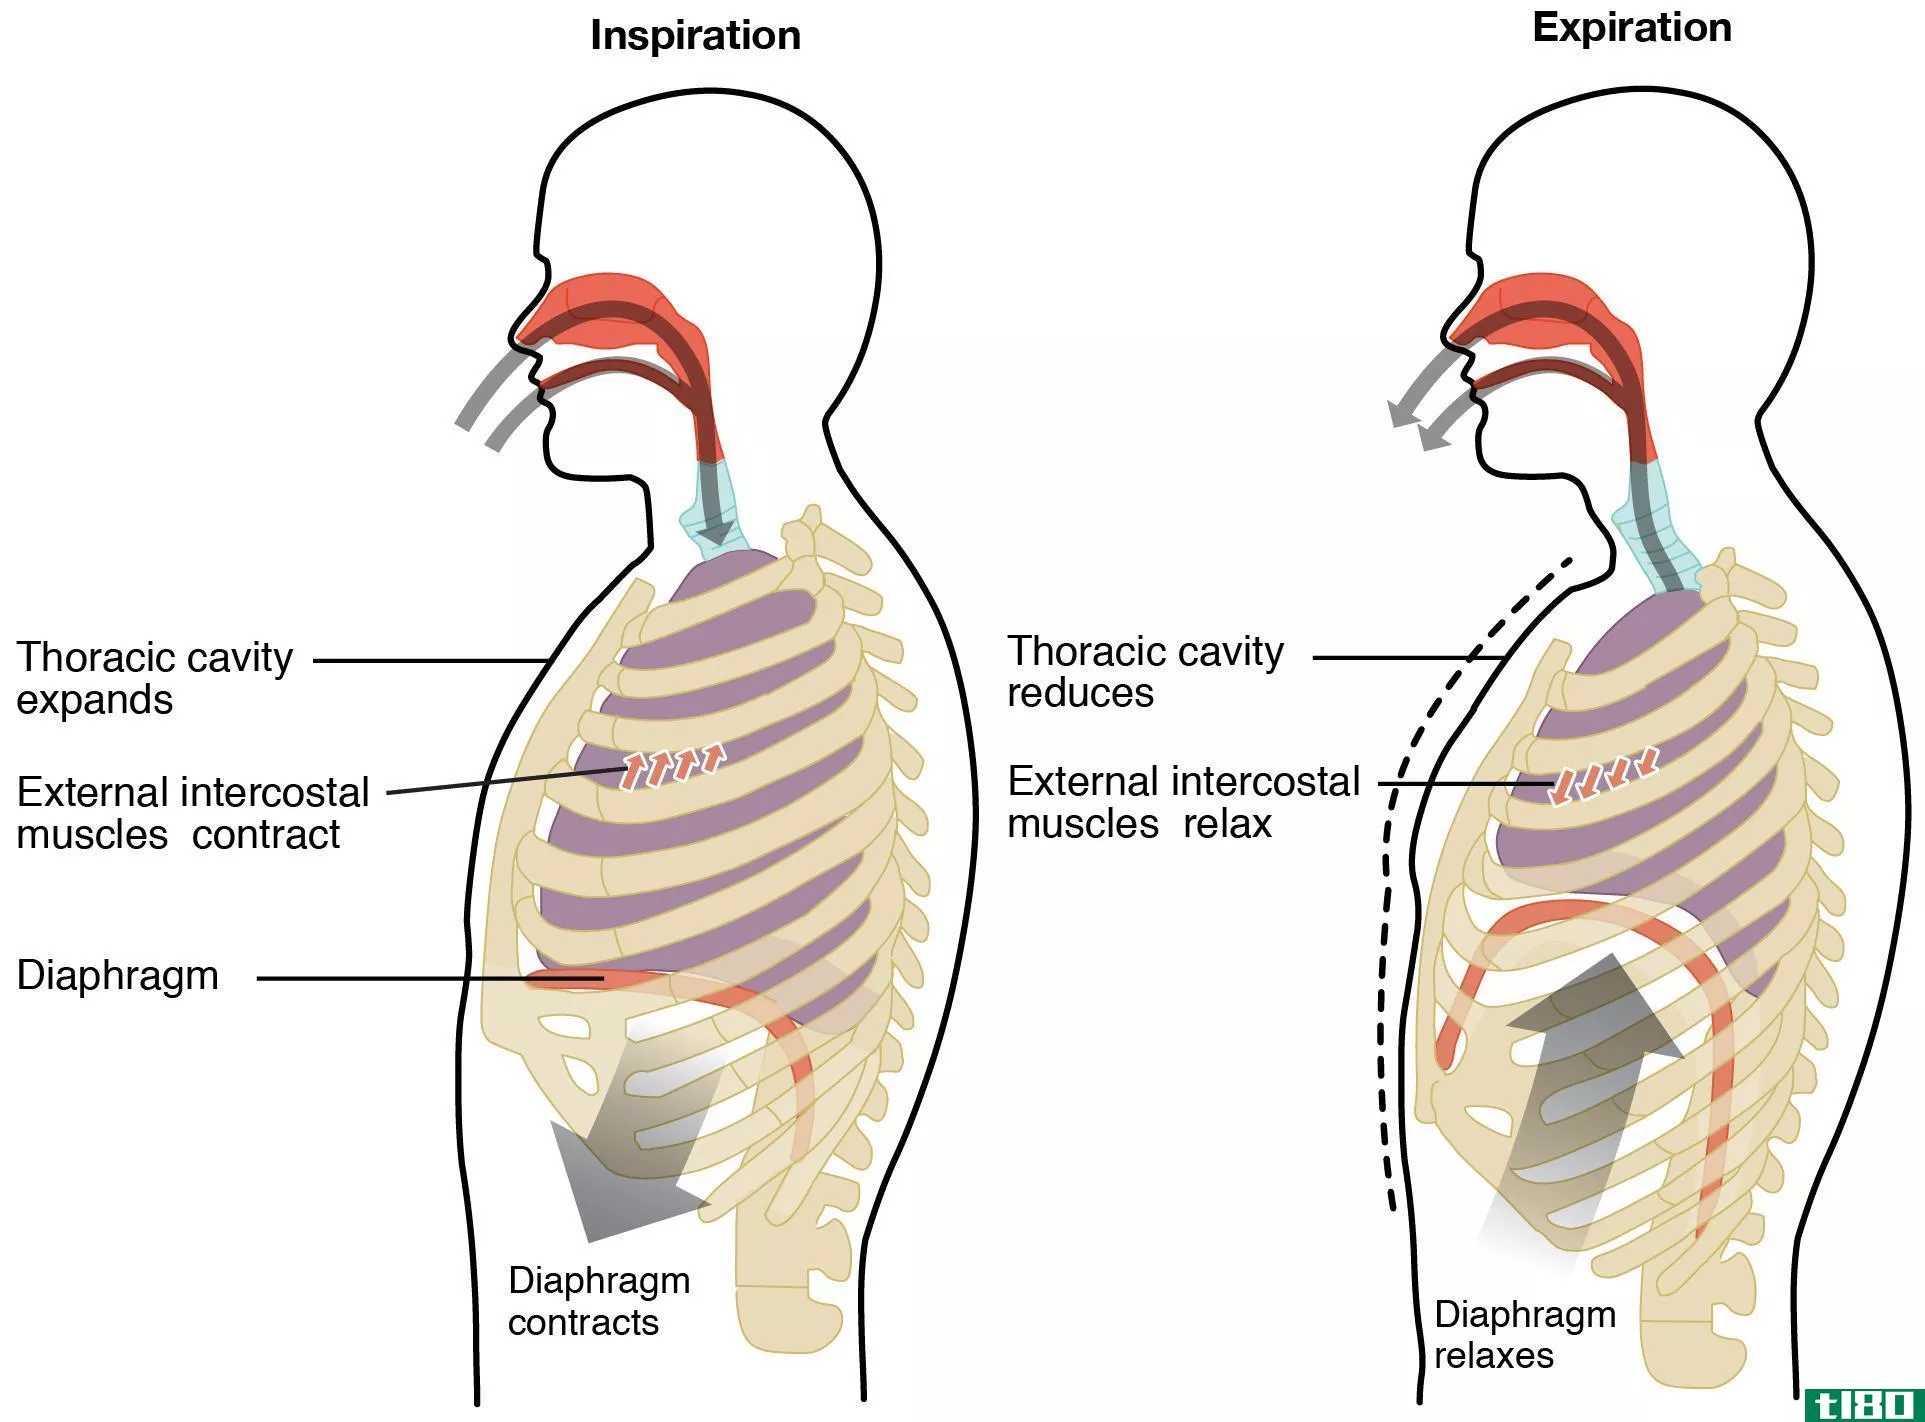 外部呼吸(external respiration)和内呼吸(internal respiration)的区别